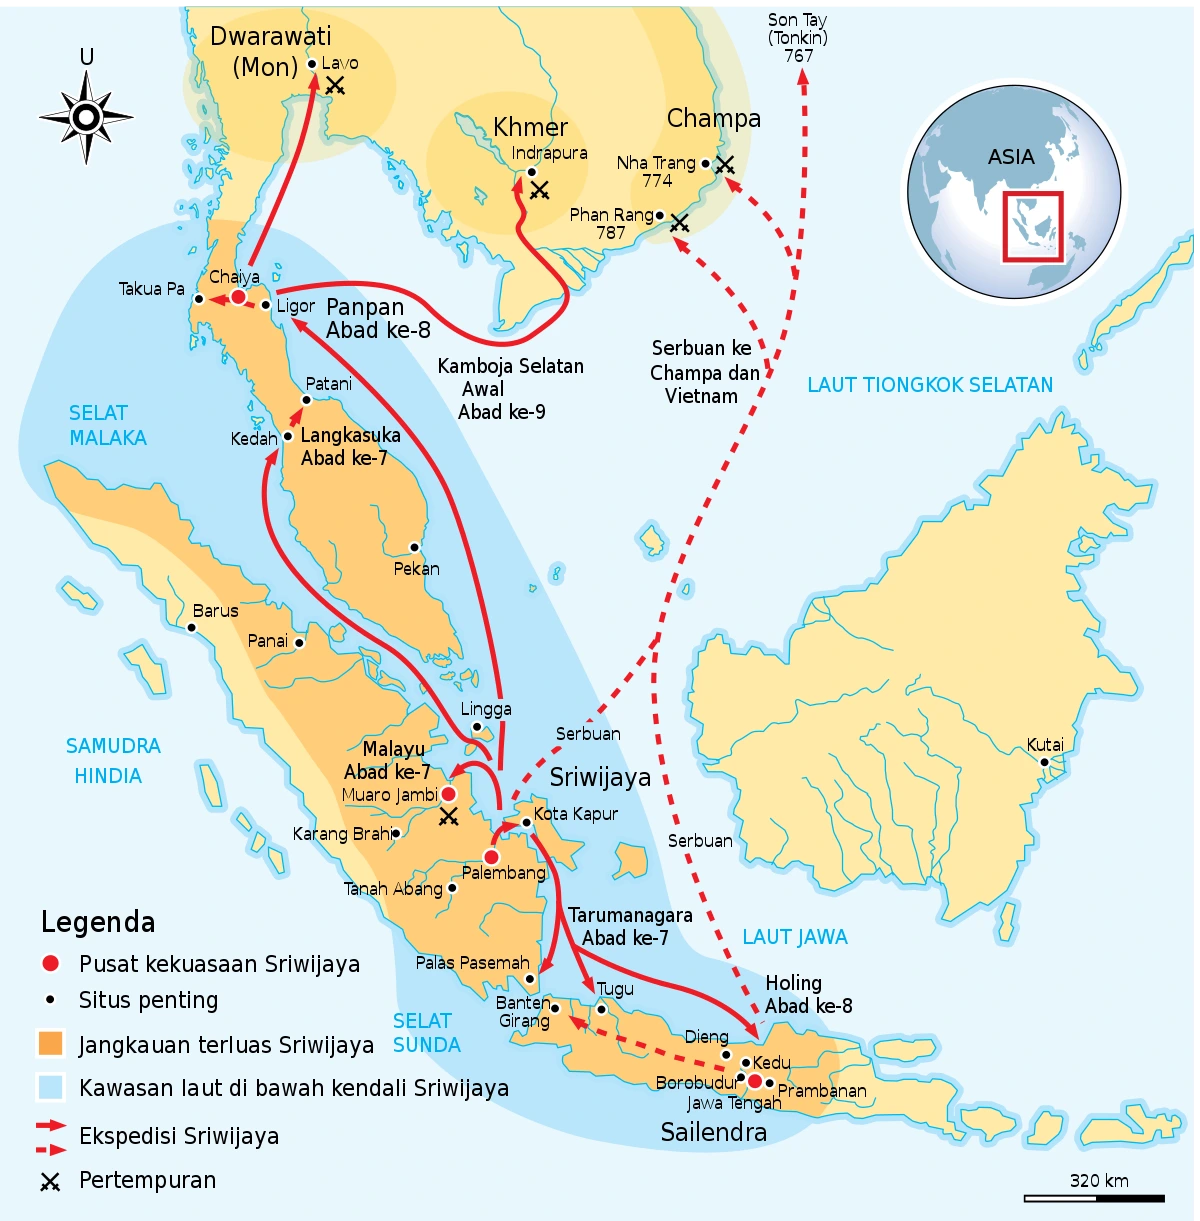 Peta wilayah Kerajaan Sriwijaya yang merupakan kerajaan maritim.